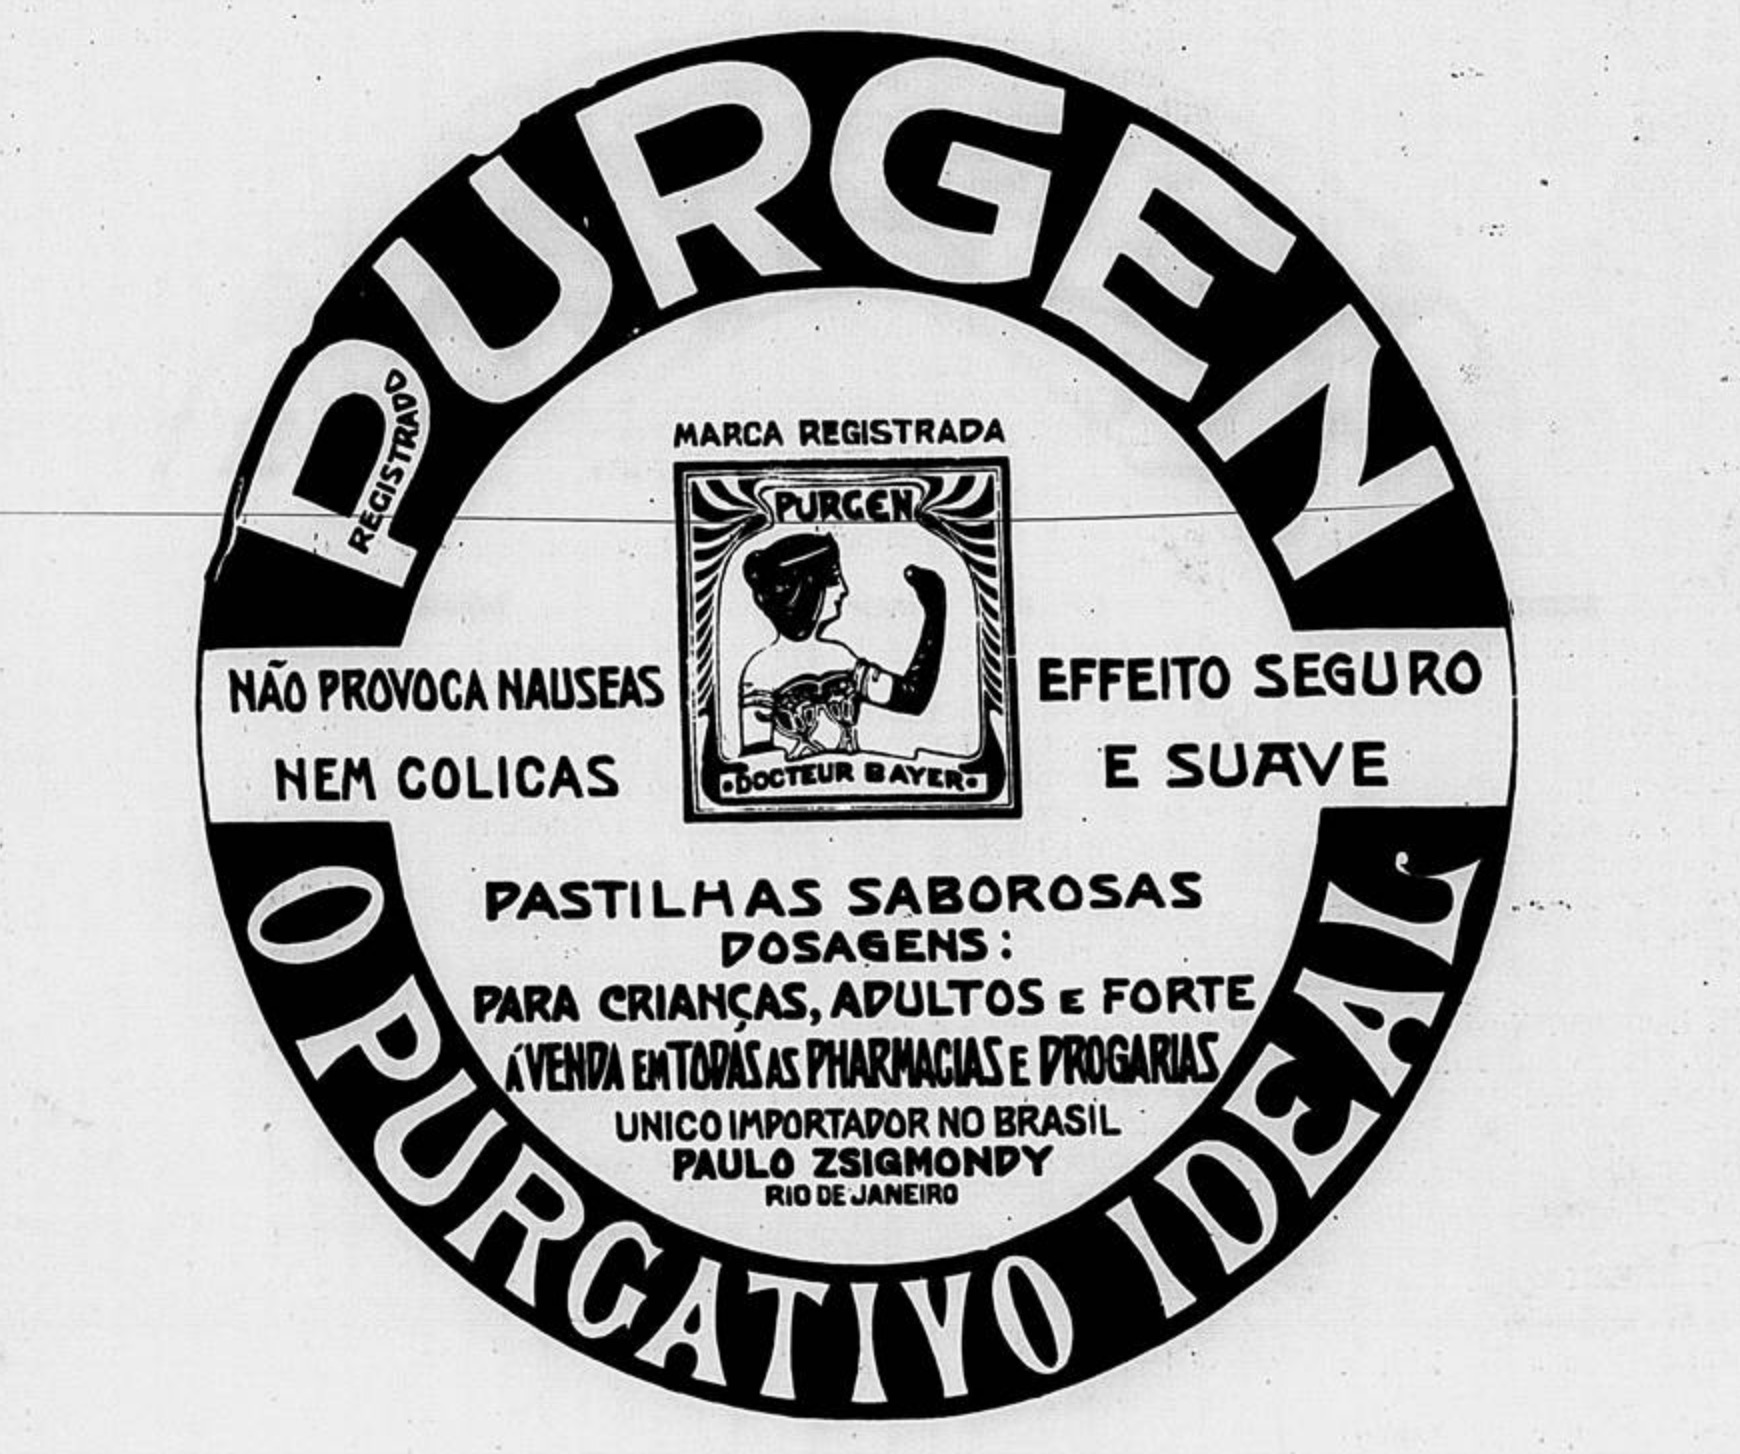 Anúncio veiculado em 1907 promovia o purgativo da marca Purgen